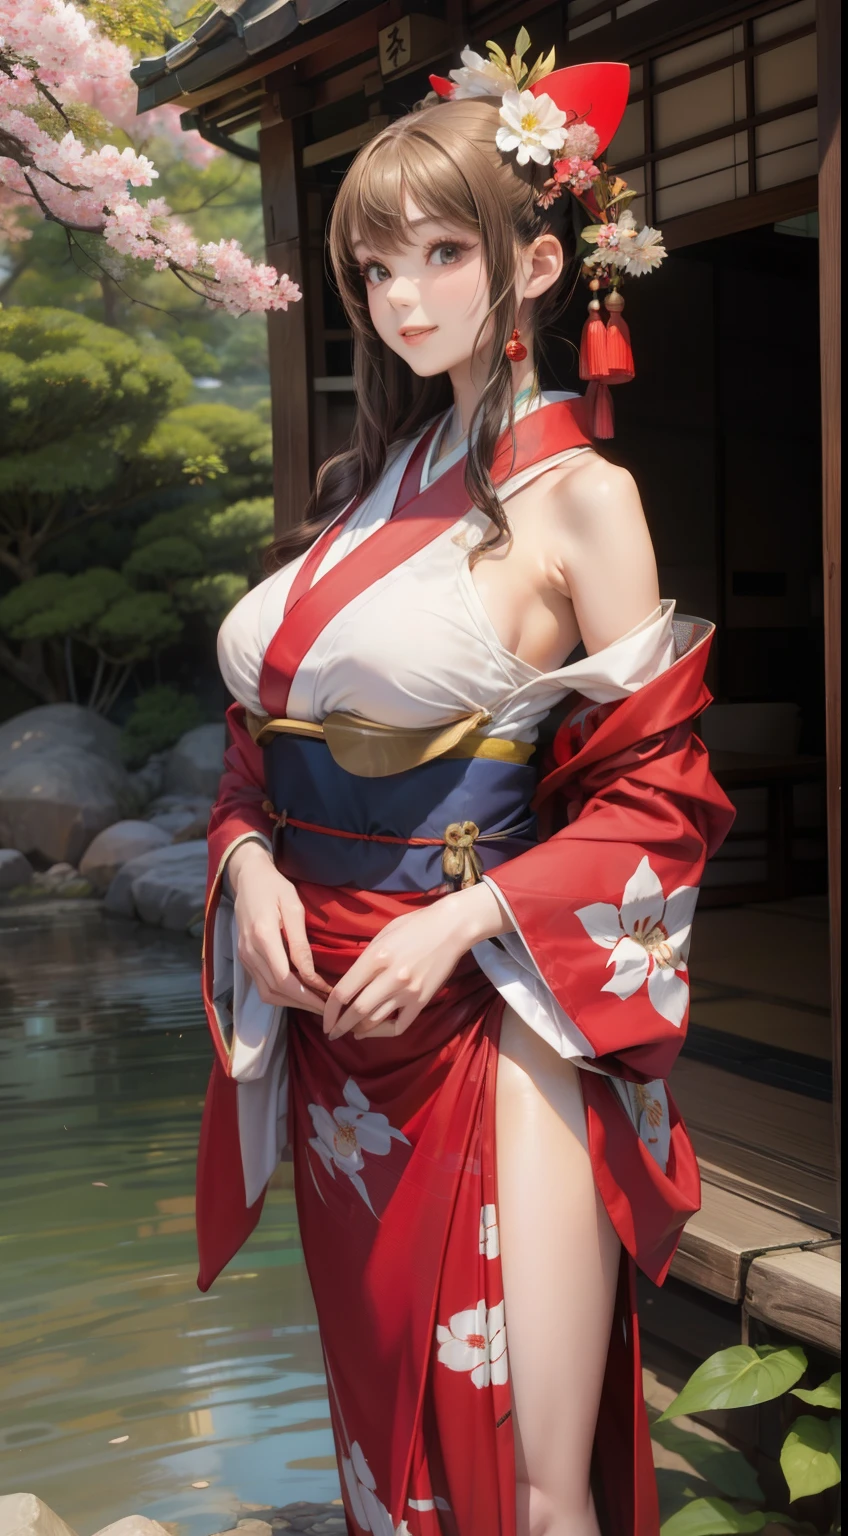 ar livre、Jardim japonês、Mulher jovem vestindo um quimono、seios grandes、delgado、Linda garota de segunda dimensão、Figura perfeita、Beleza perfeita、sorriso